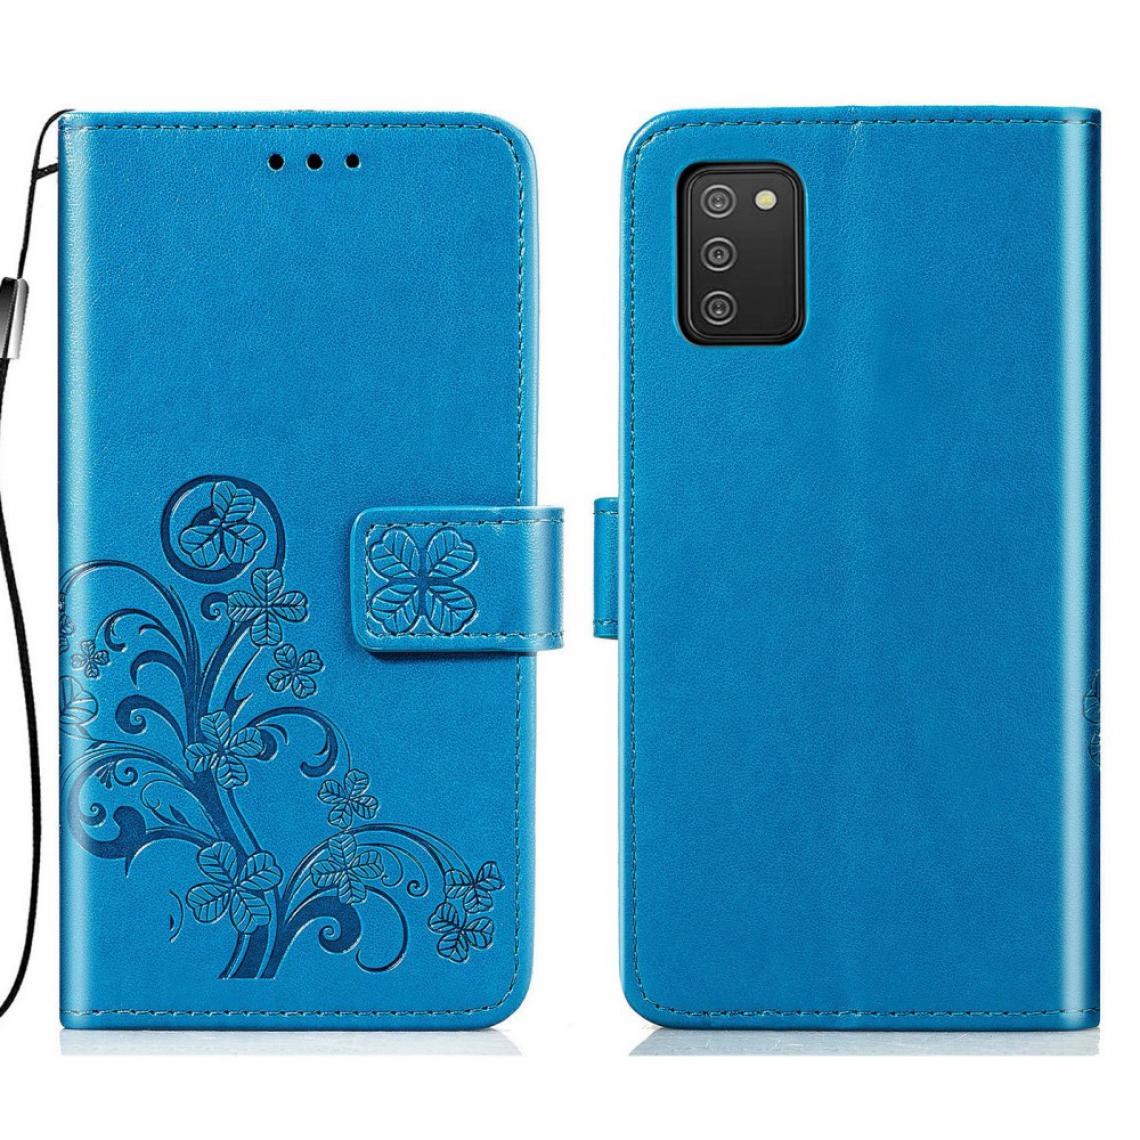 Other - Etui en PU Impression de motifs de trèfle (164,2 x 75,9 x 9,1 mm) (version UE) avec support bleu pour votre Samsung Galaxy A02s - Coque, étui smartphone